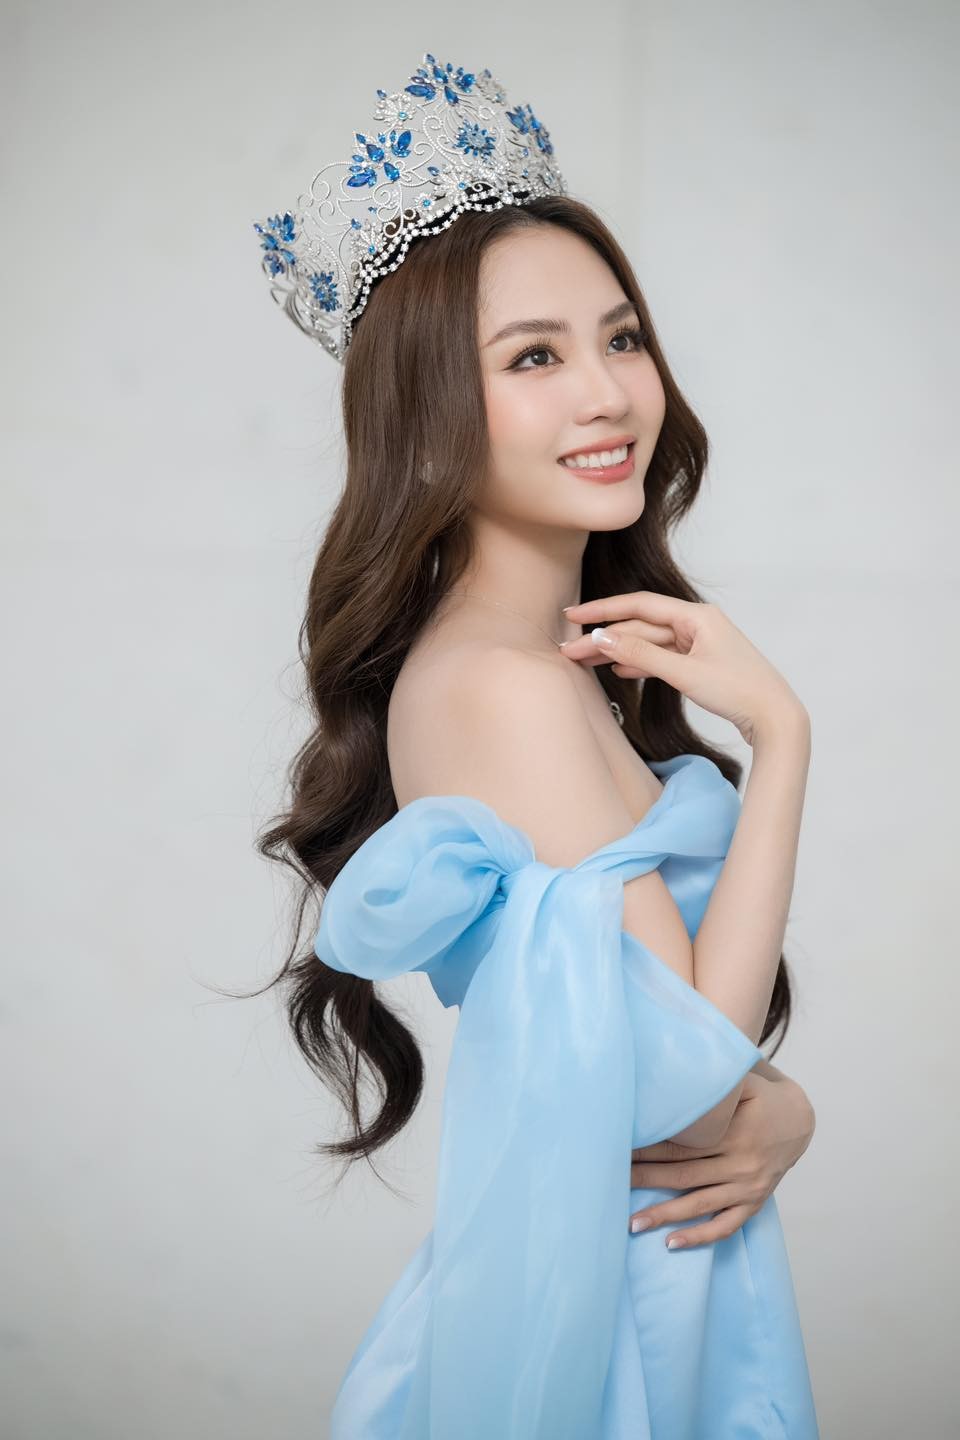 Sao Việt: Hoa hậu Mai Phương khoe vai trần gợi cảm, Hariwon đăng ảnh mặc áo cưới